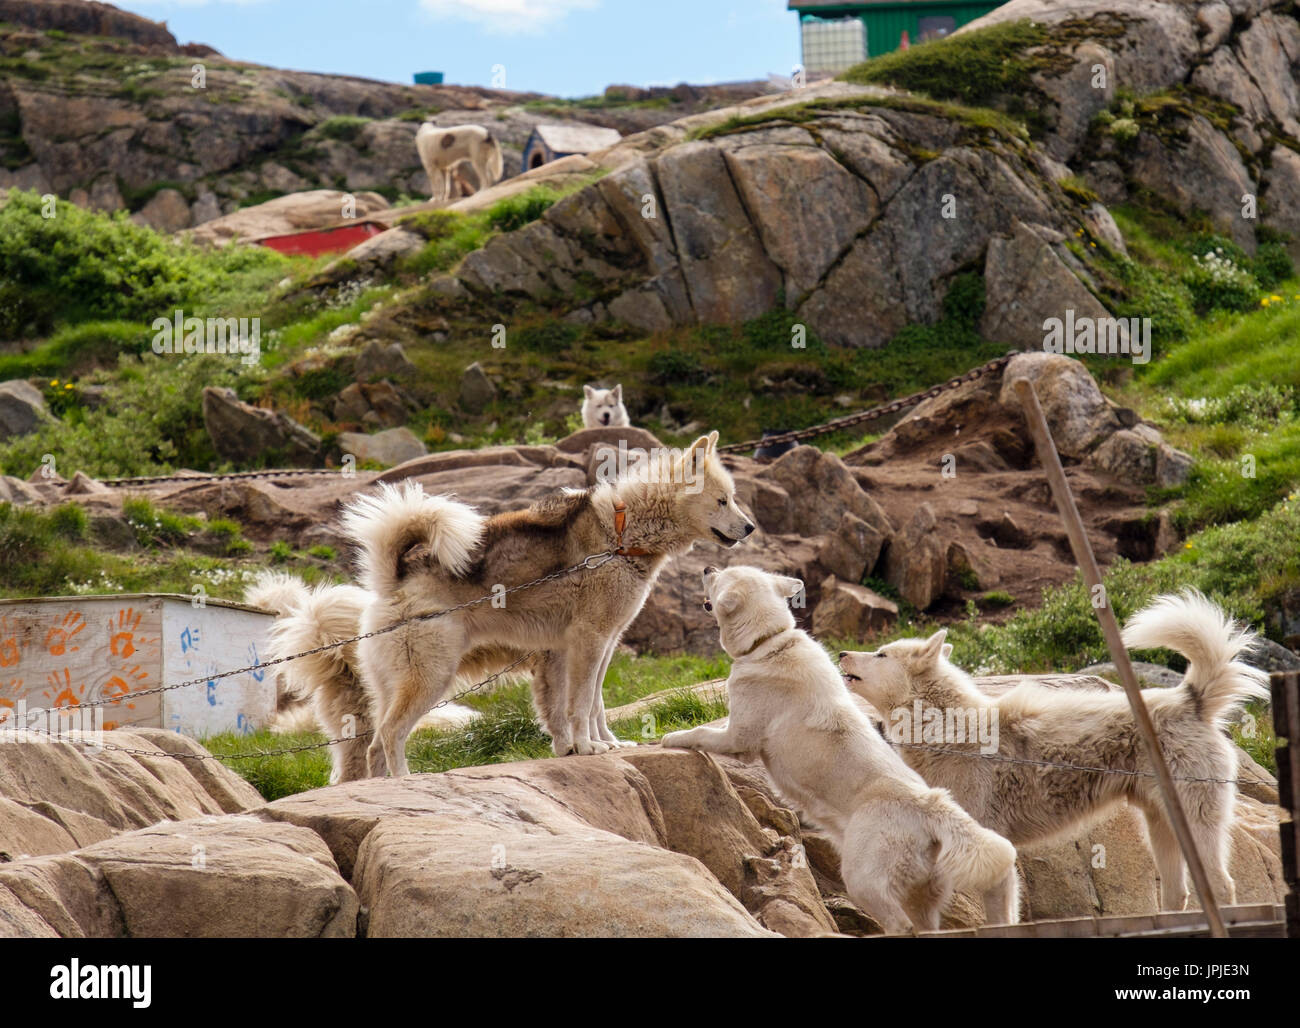 Les Huskies groenlandais (Canis lupus familiaris borealis) interagir tout en chaîne jusqu'à l'extérieur en été. Sisimiut (Holsteinsborg), Qeqqata, au Groenland. Banque D'Images